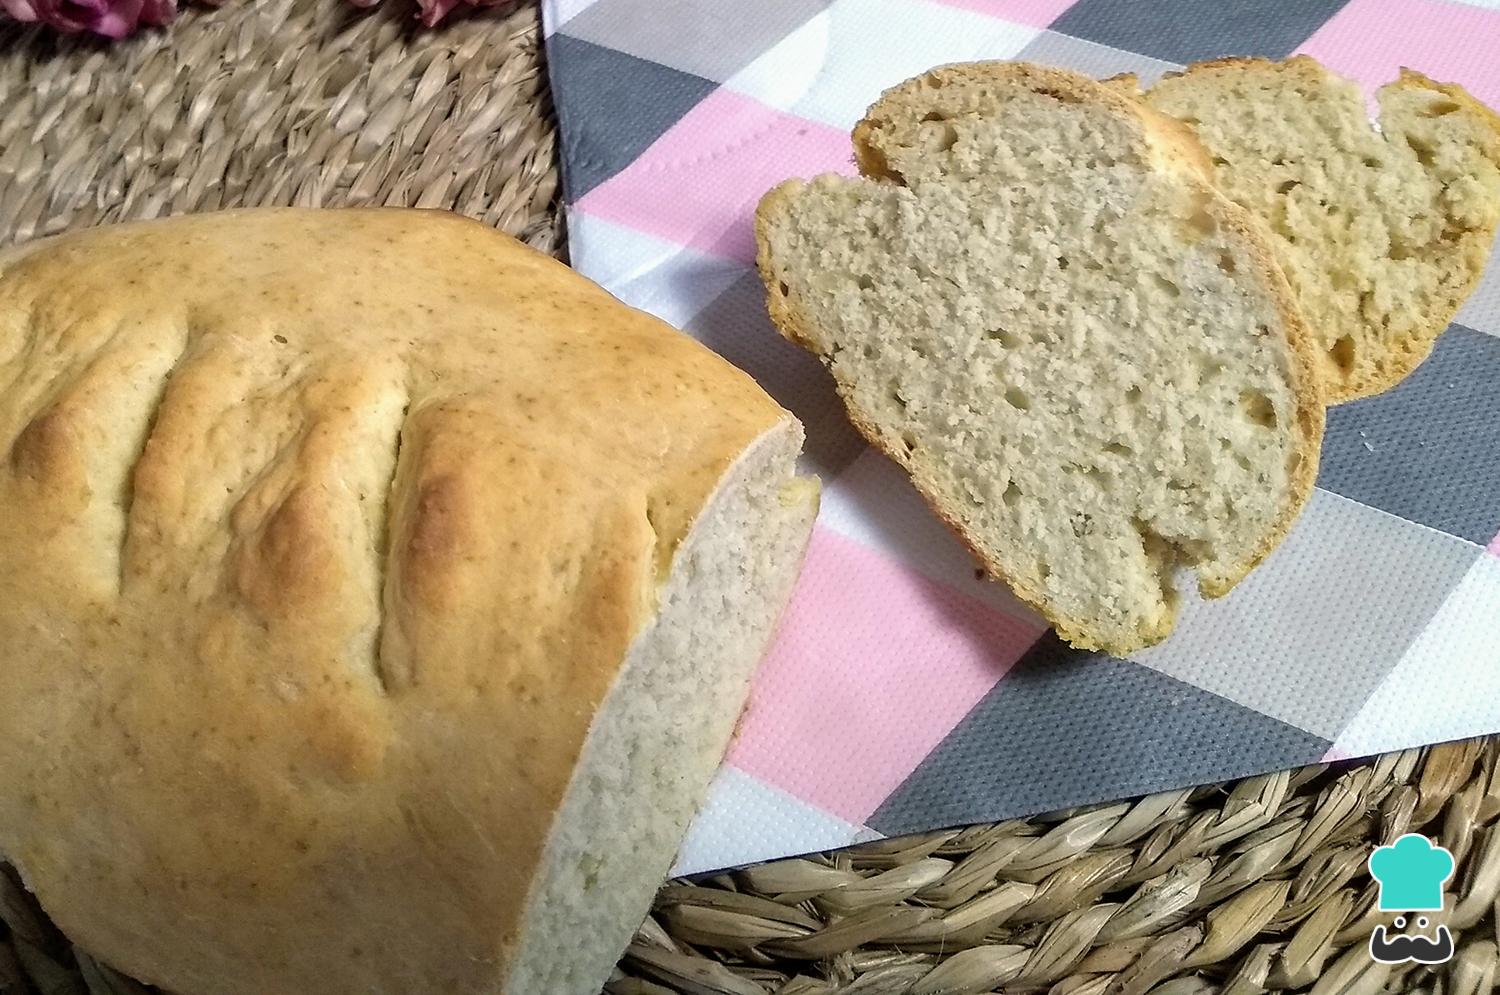 Levadura de panadero Lidl: la opción económica y de calidad para tus recetas de pan casero